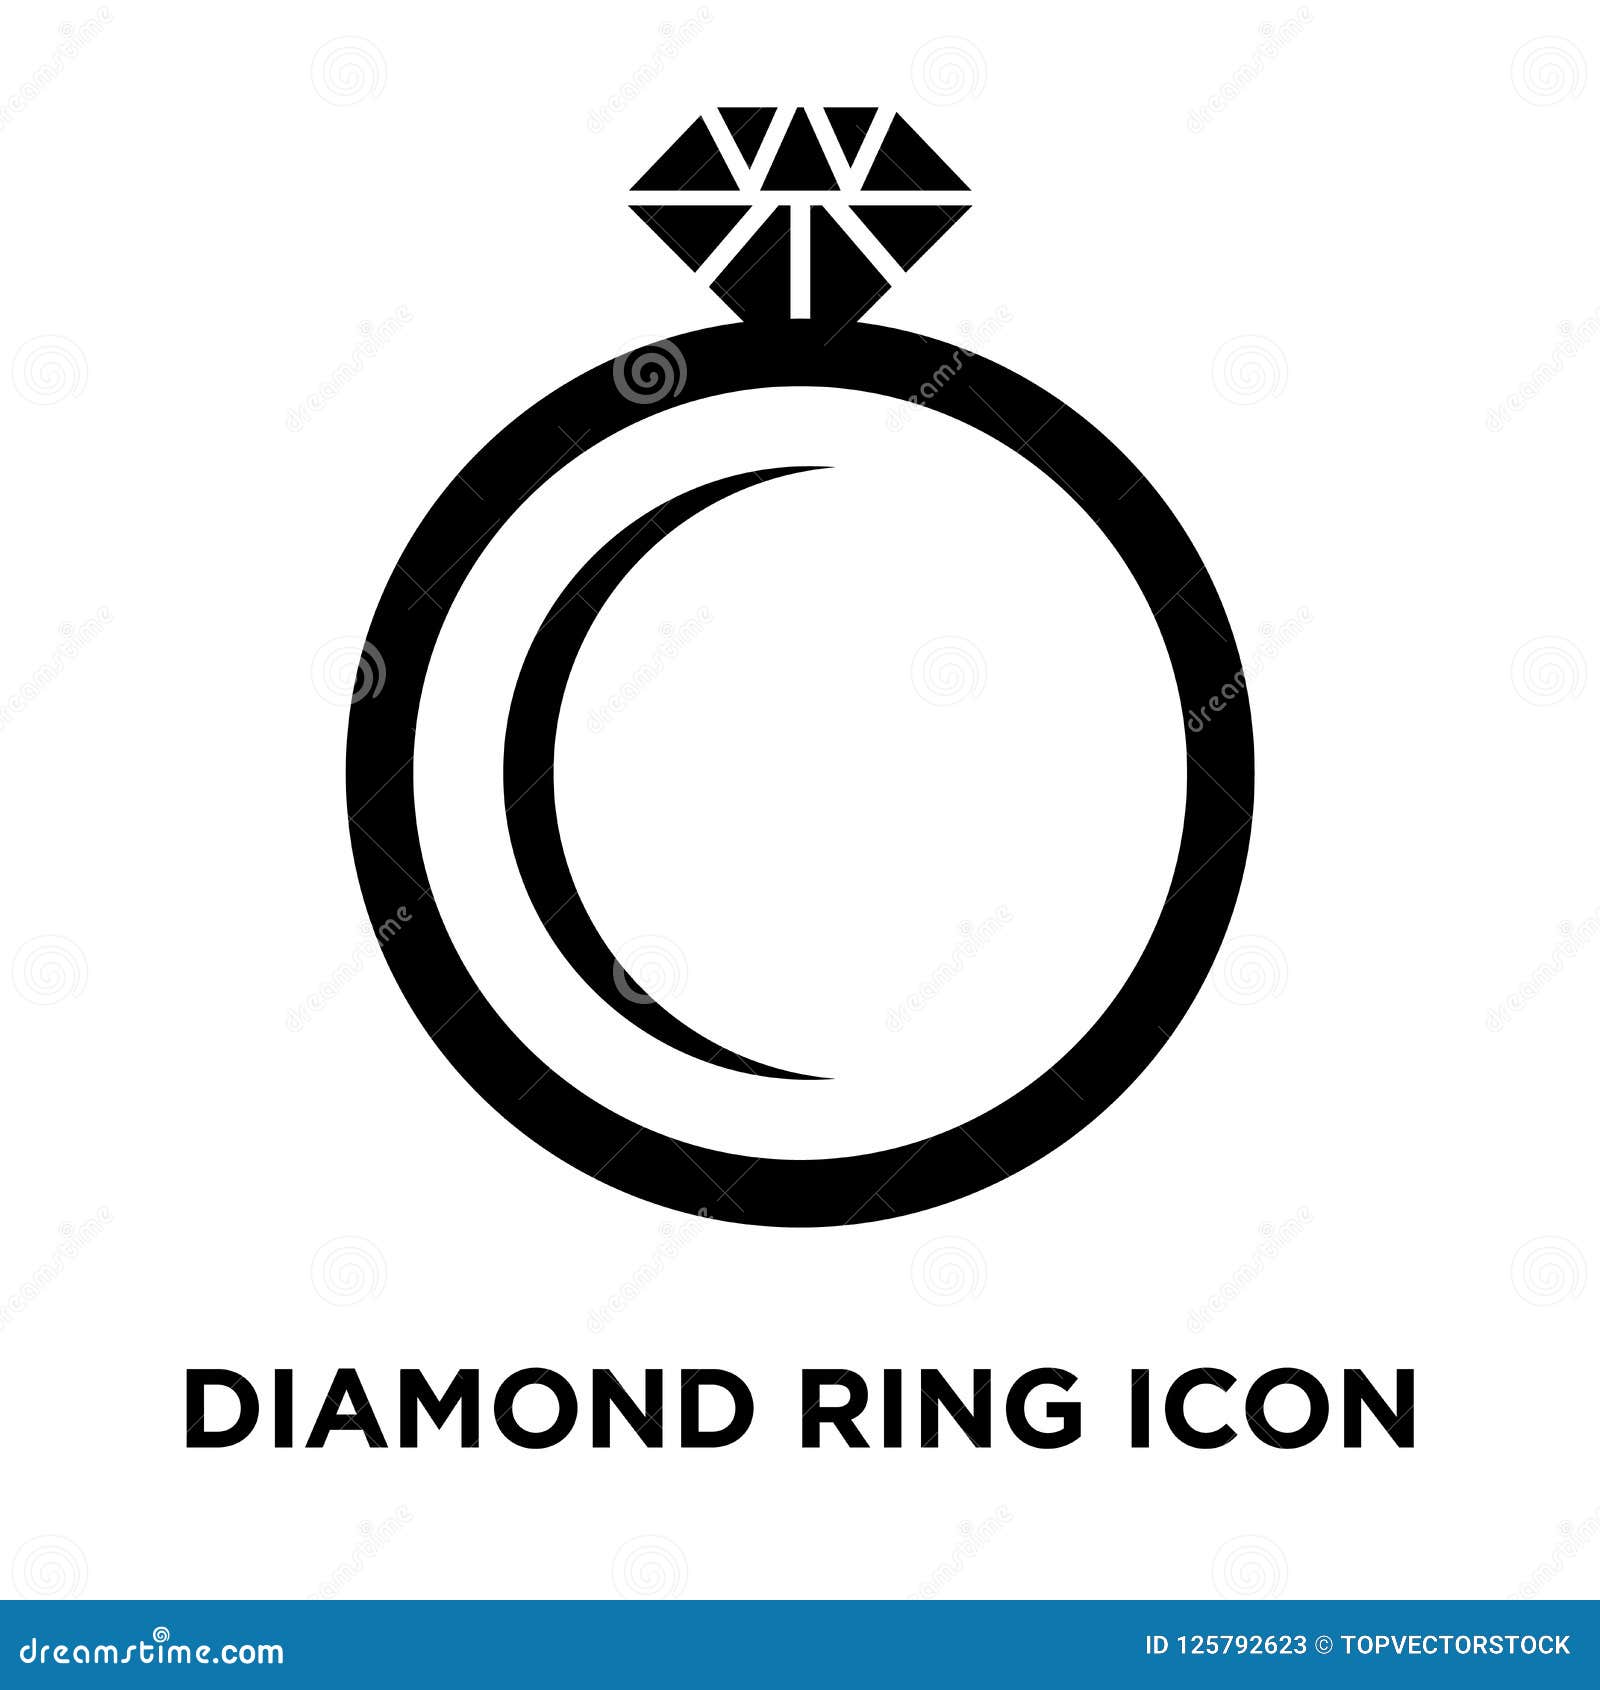 diamond ring iconÃÂ    on white background, logo co